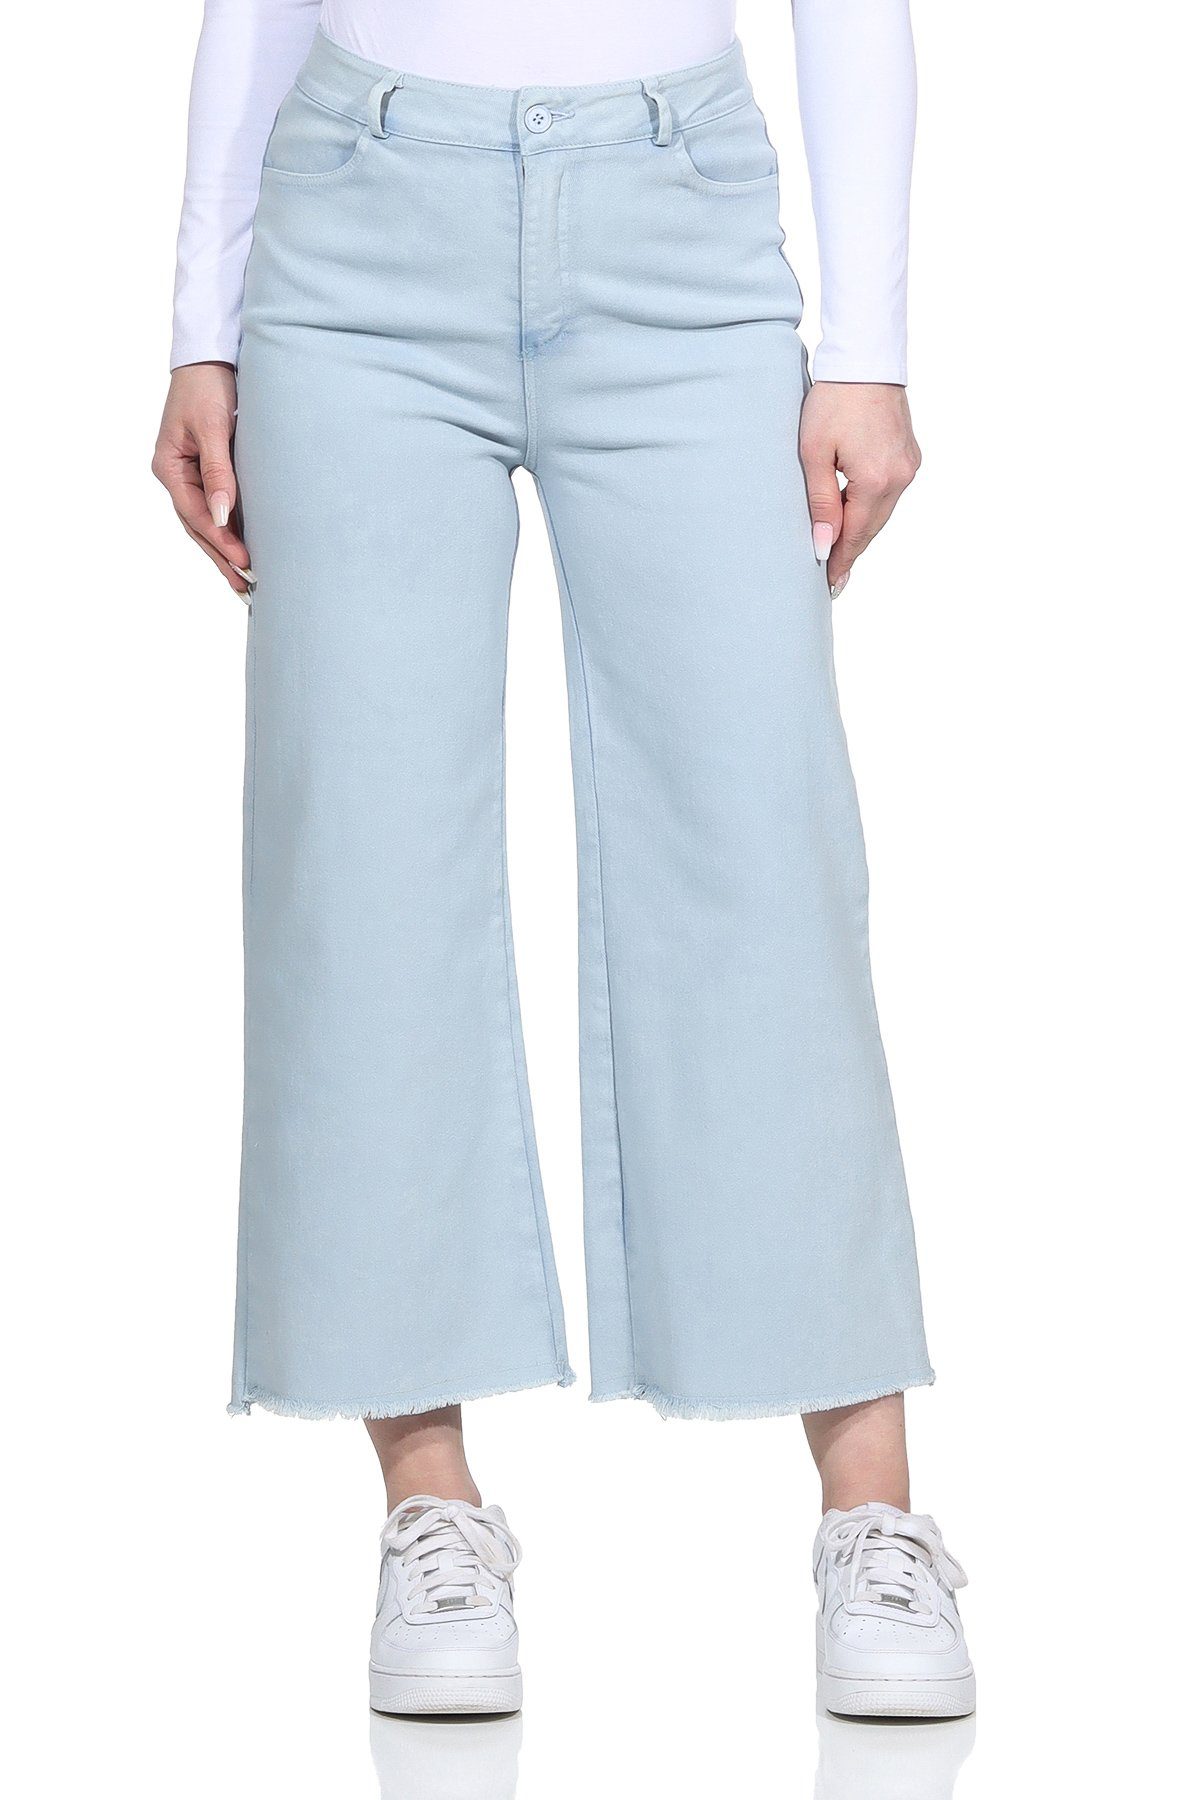 Aurela Damenmode Jeans Weite 100% Gürtelschlaufen, mit knöchelfrei, Damen Wide Hellblau Jeans Baumwolle für Leg Culotte